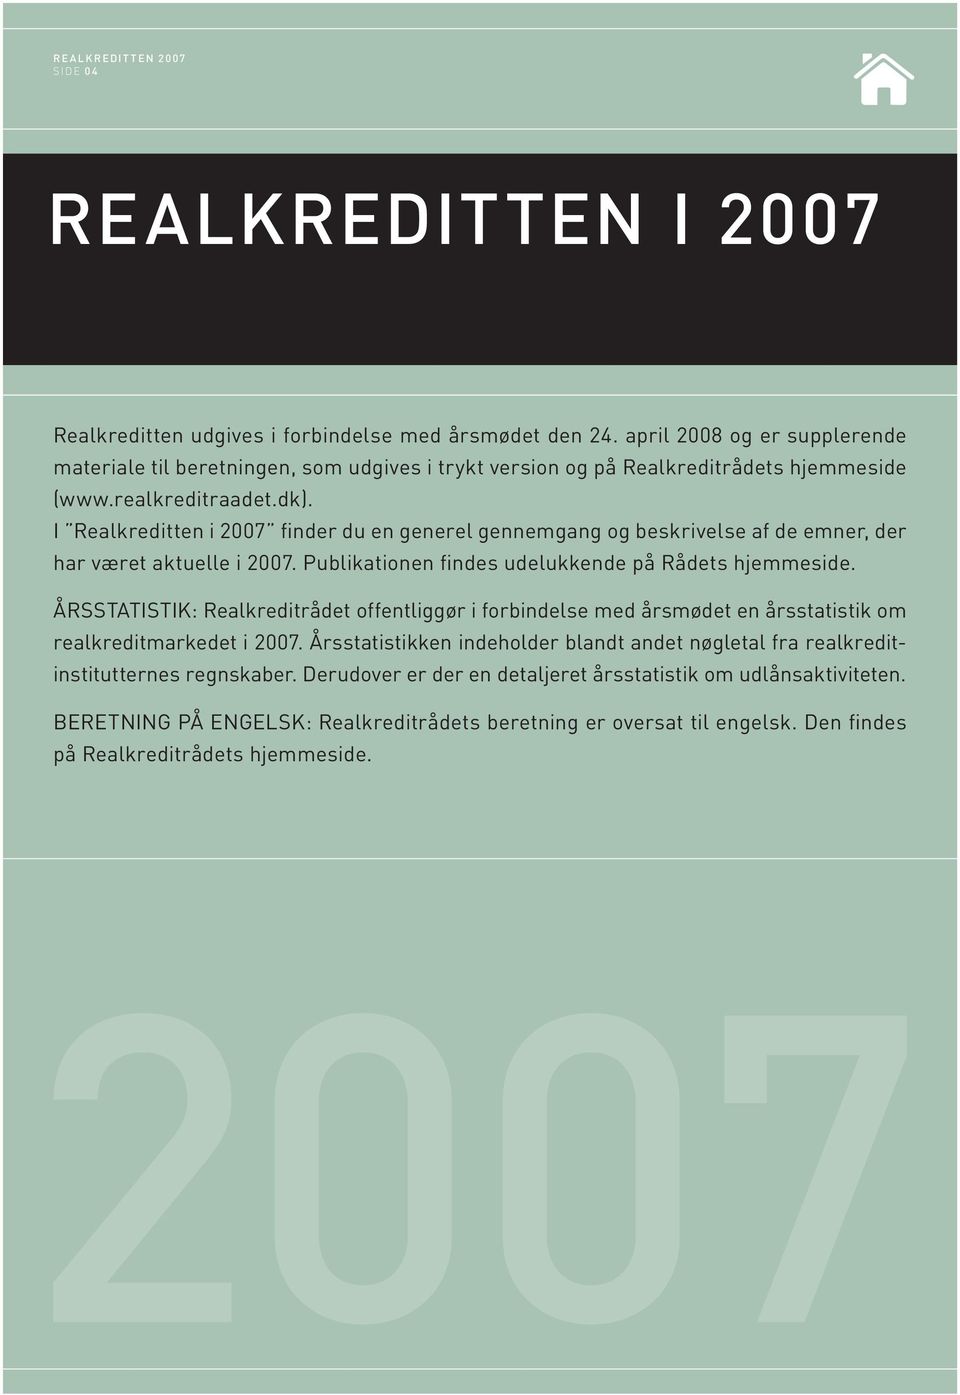 I Realkreditten i 2007 finder du en generel gennemgang og beskrivelse af de emner, der har været aktuelle i 2007. Publikationen findes udelukkende på Rådets hjemmeside.